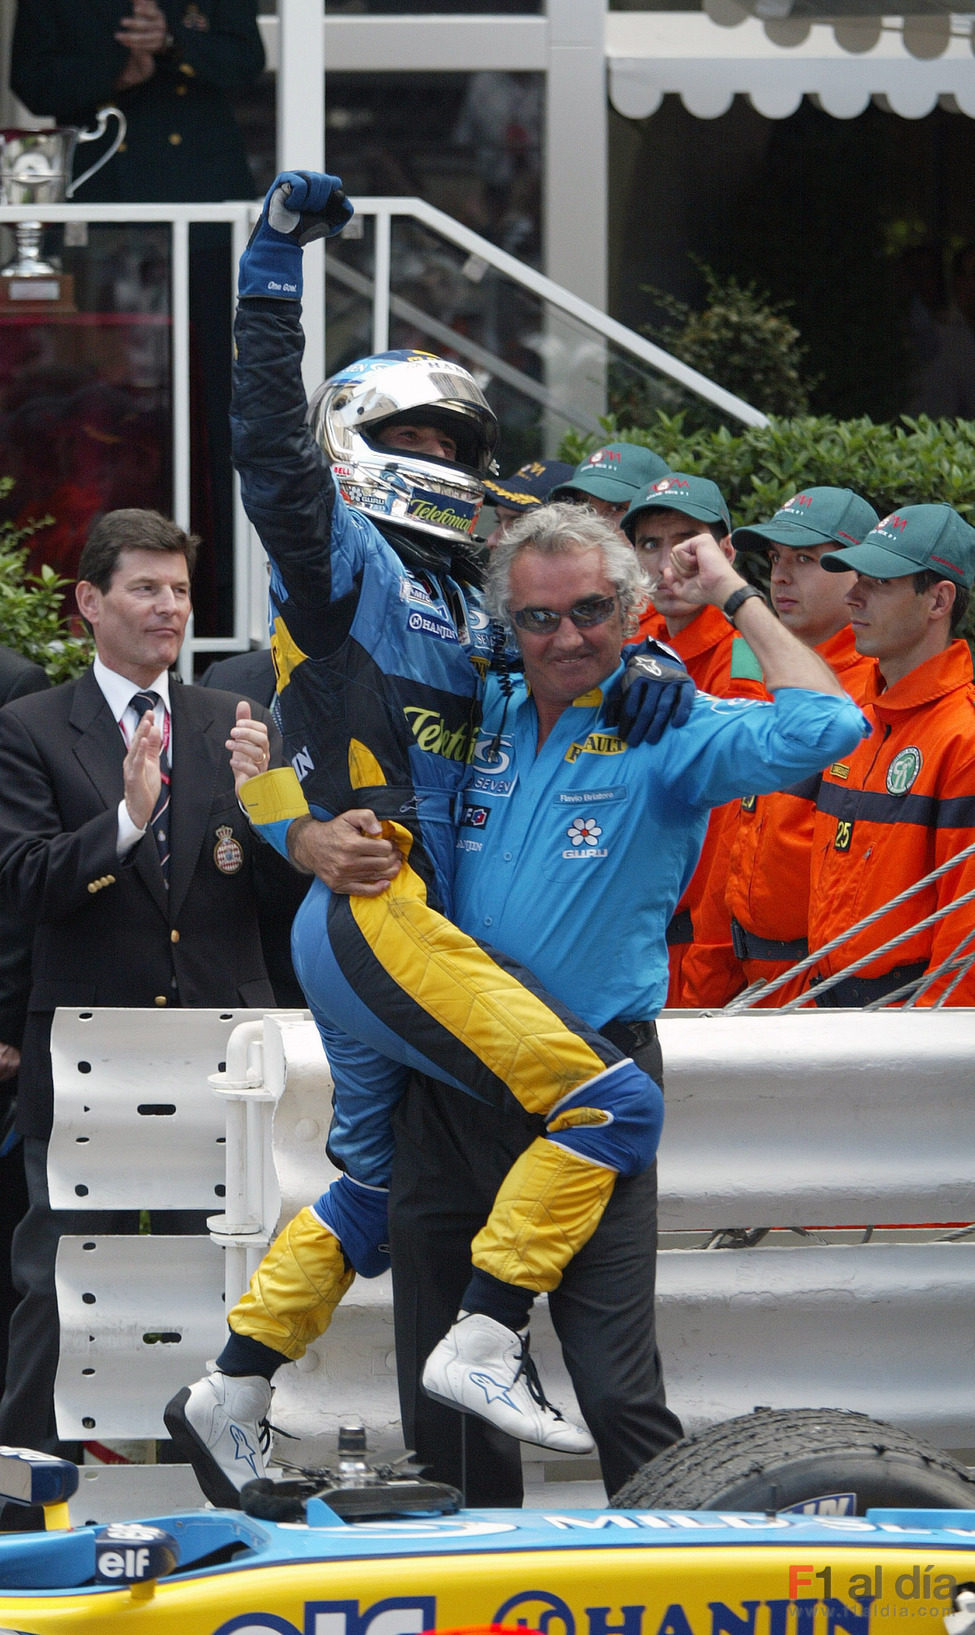 Después de siete años, ¡Trulli gana una carrera!